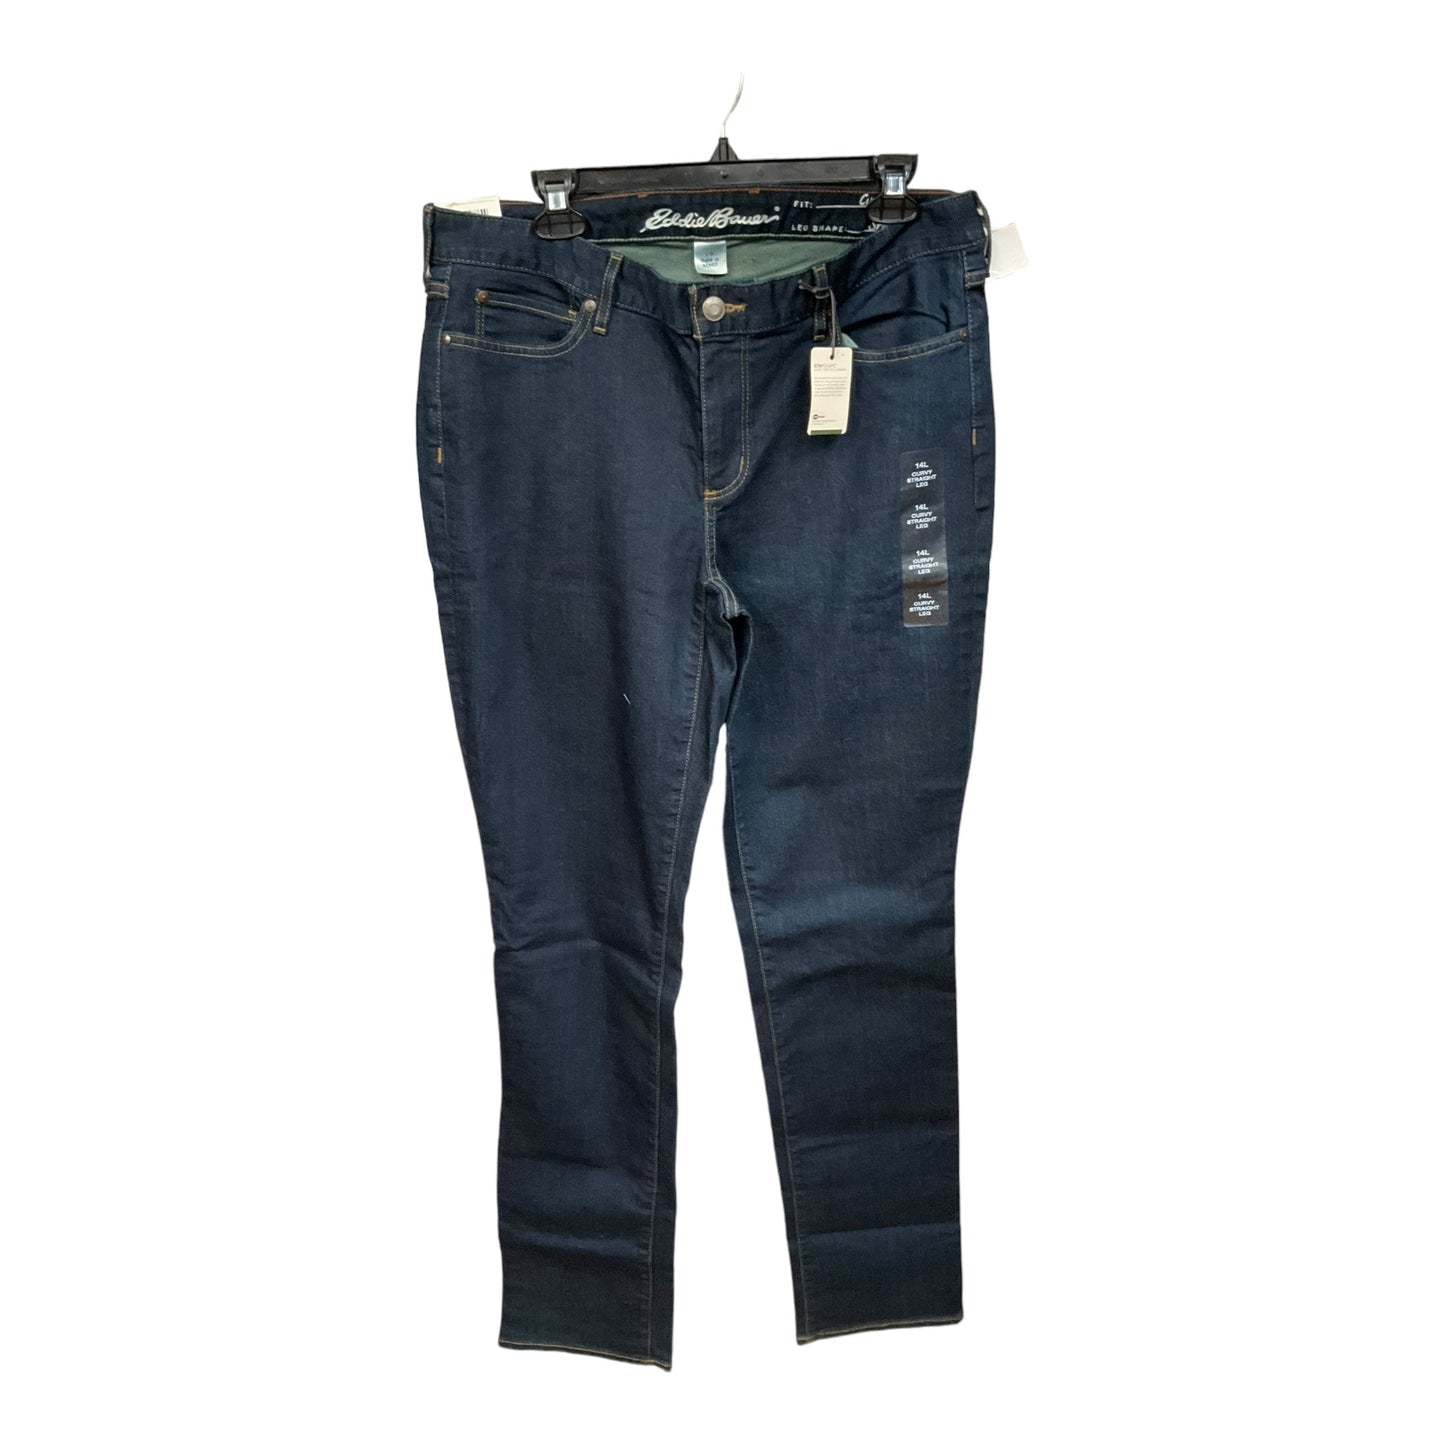 Blue Denim Jeans Straight Eddie Bauer, Size 14tall